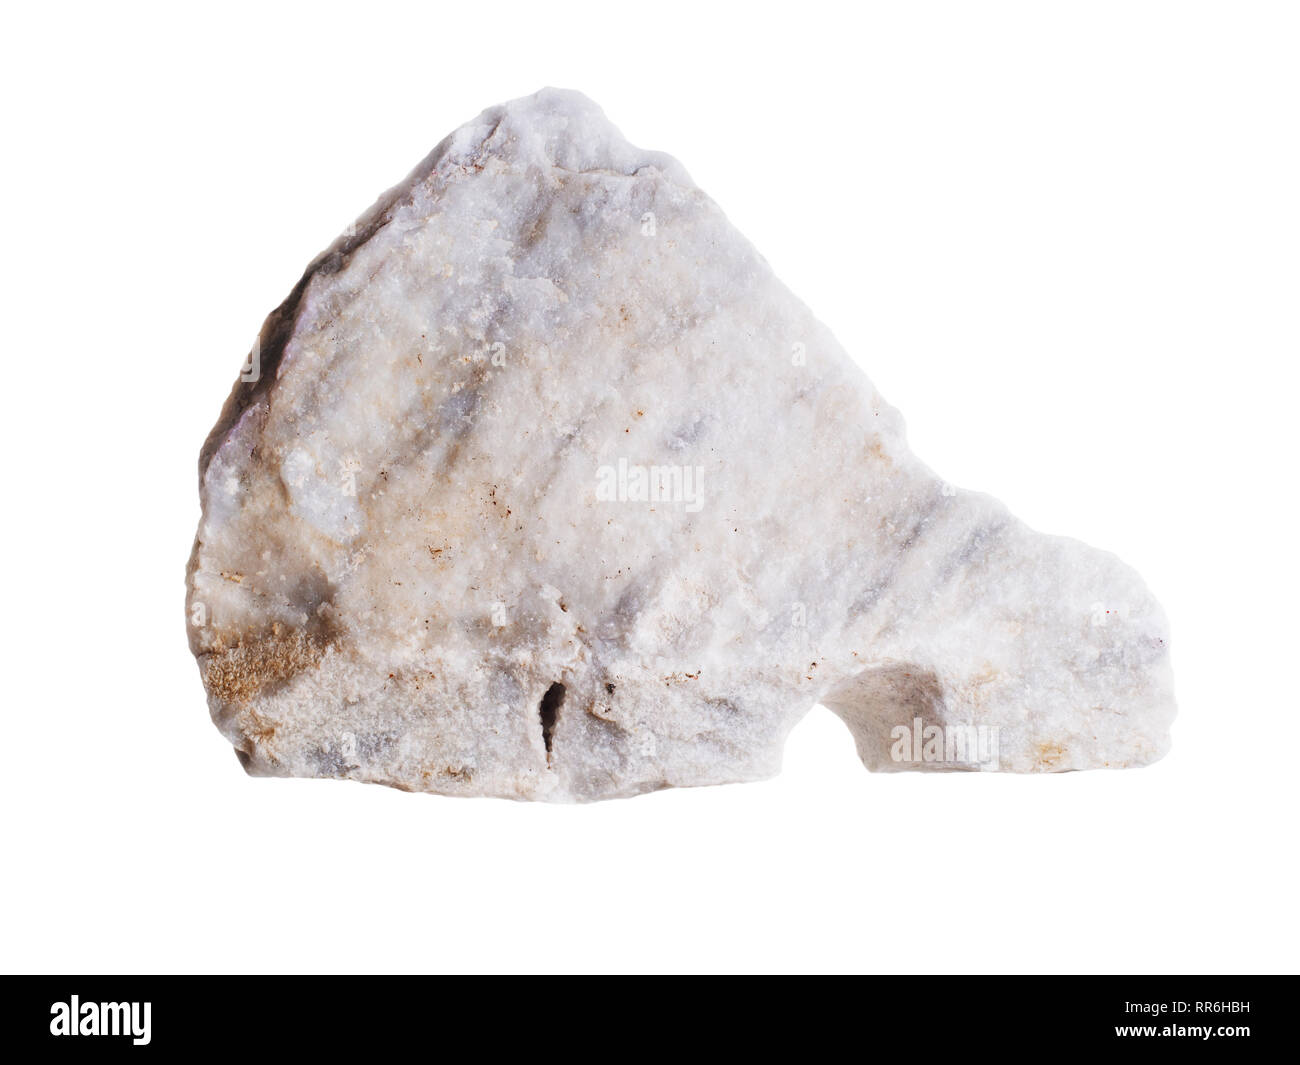 Un morceau de marbre blanc fraîchement taillé de la carrières de Carrare, Italie. Isolé sur fond blanc. Banque D'Images